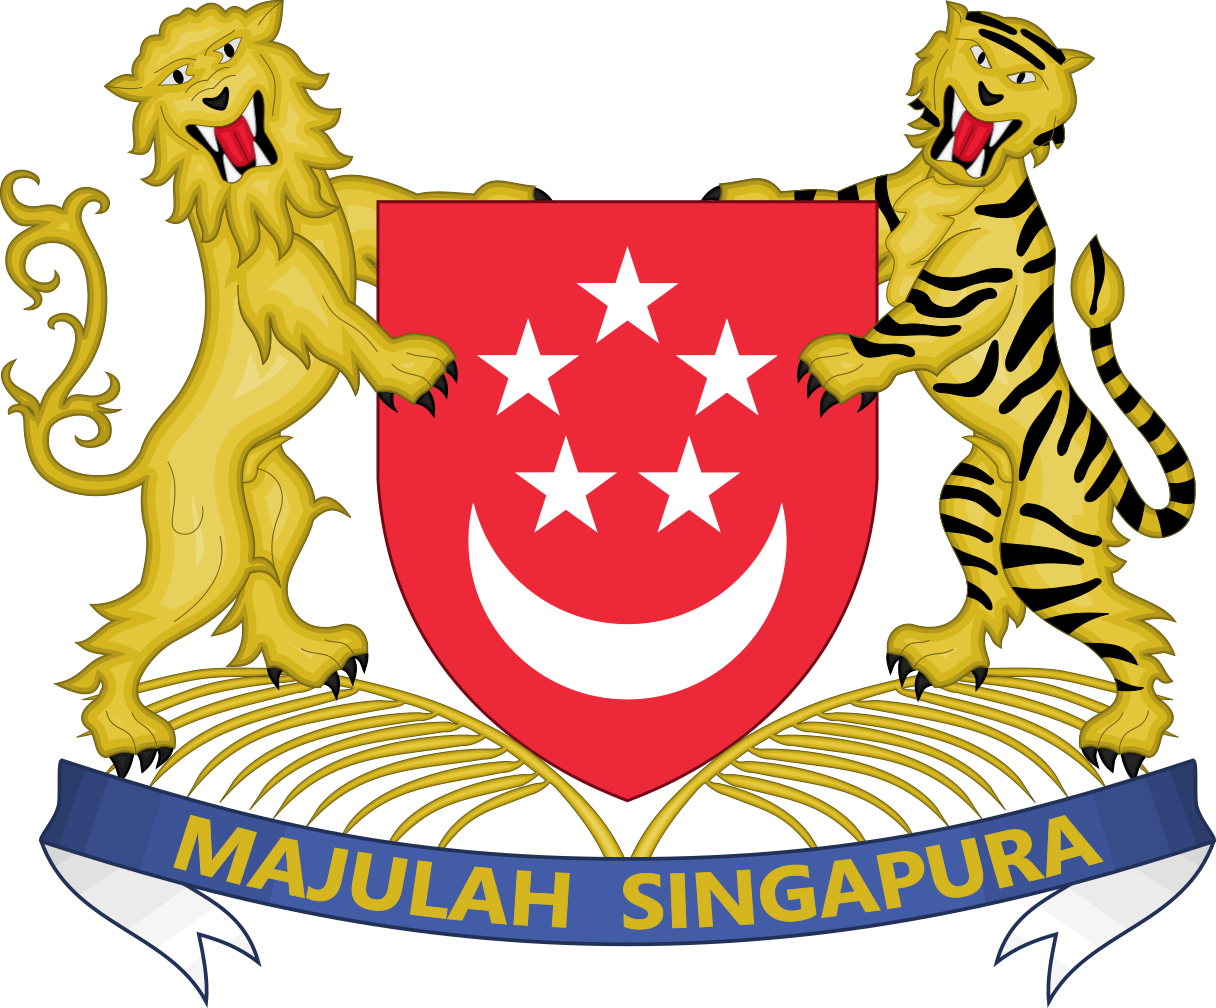 🇸🇬 Singapore National Symbols: National Animal, National Flower.